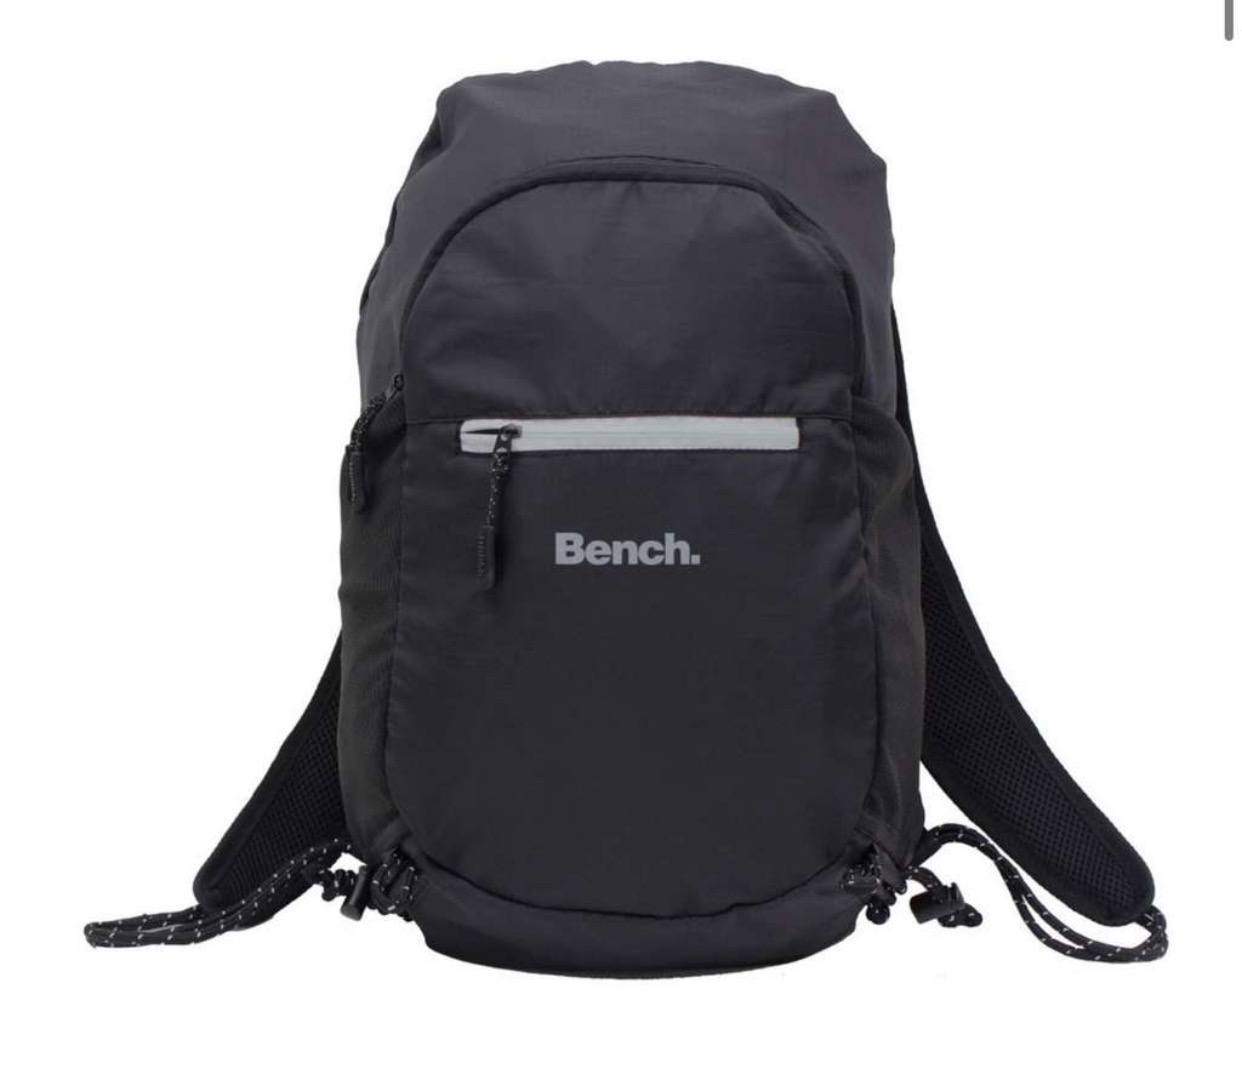 Bench Packaway Rucksack schwarz für 12,84€ (statt 18€)